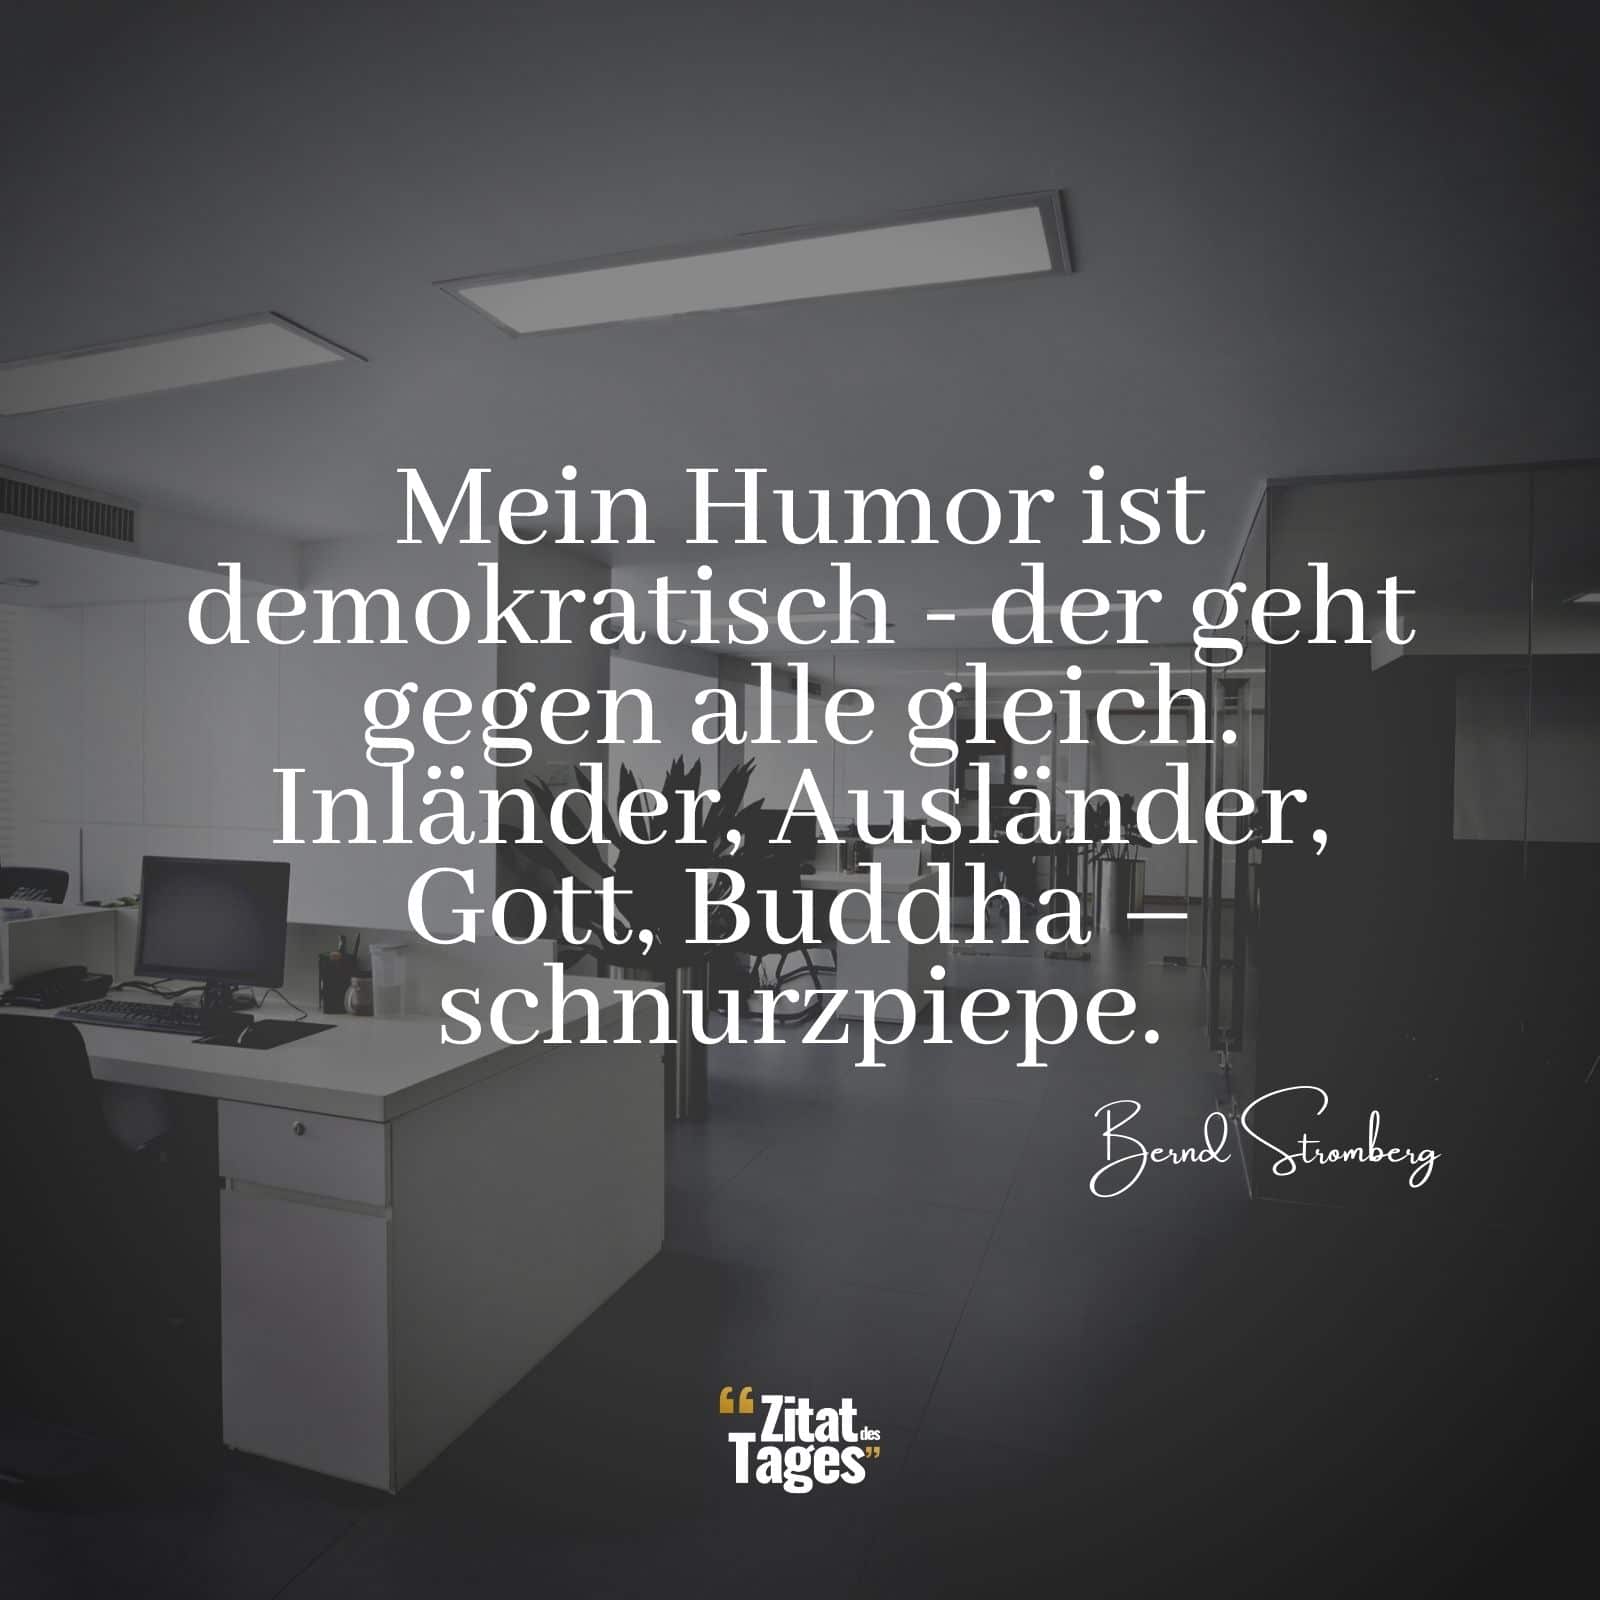 Mein Humor ist demokratisch - der geht gegen alle gleich. Inländer, Ausländer, Gott, Buddha – schnurzpiepe. - Bernd Stromberg